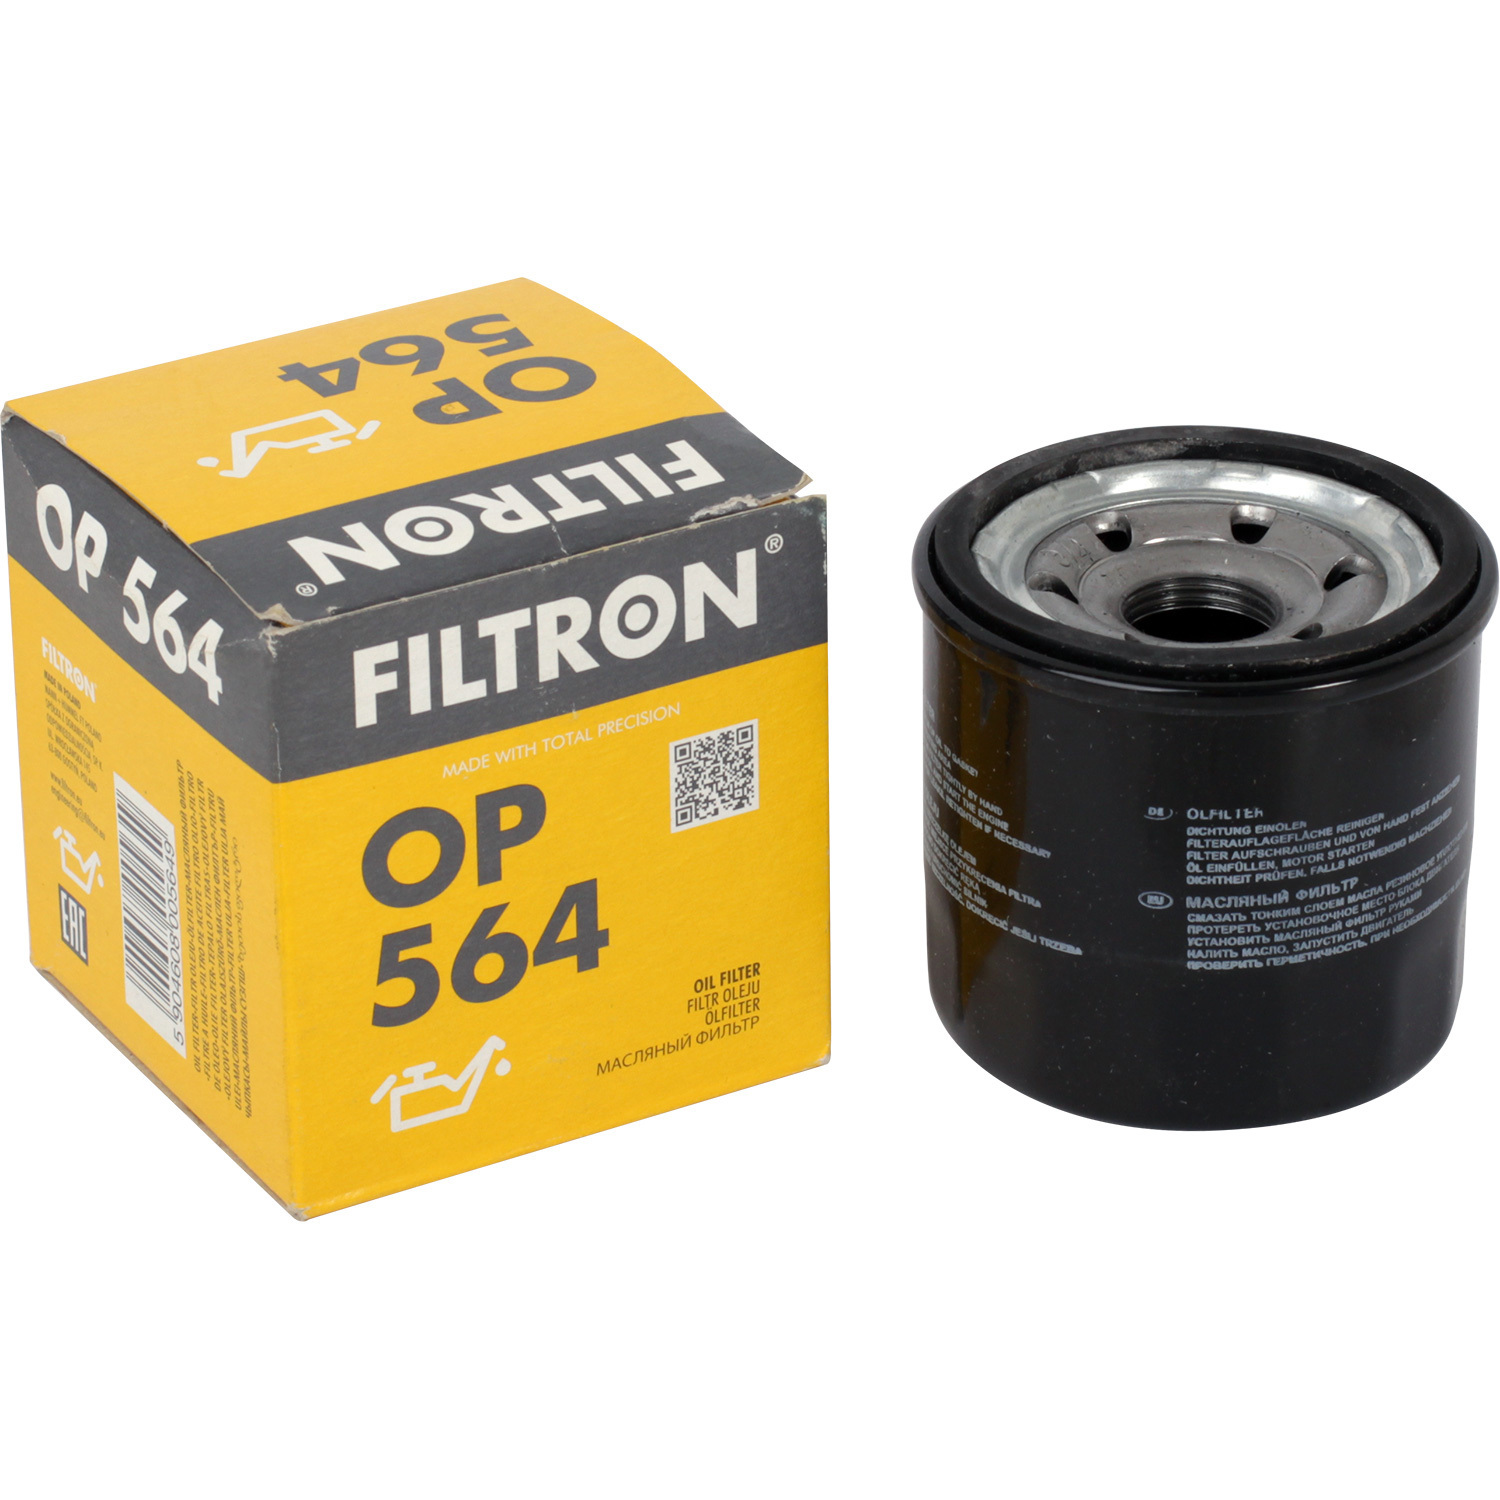 Фильтры Filtron Фильтр масляный Filtron OP564 фильтры filtron фильтр масляный filtron oe6856